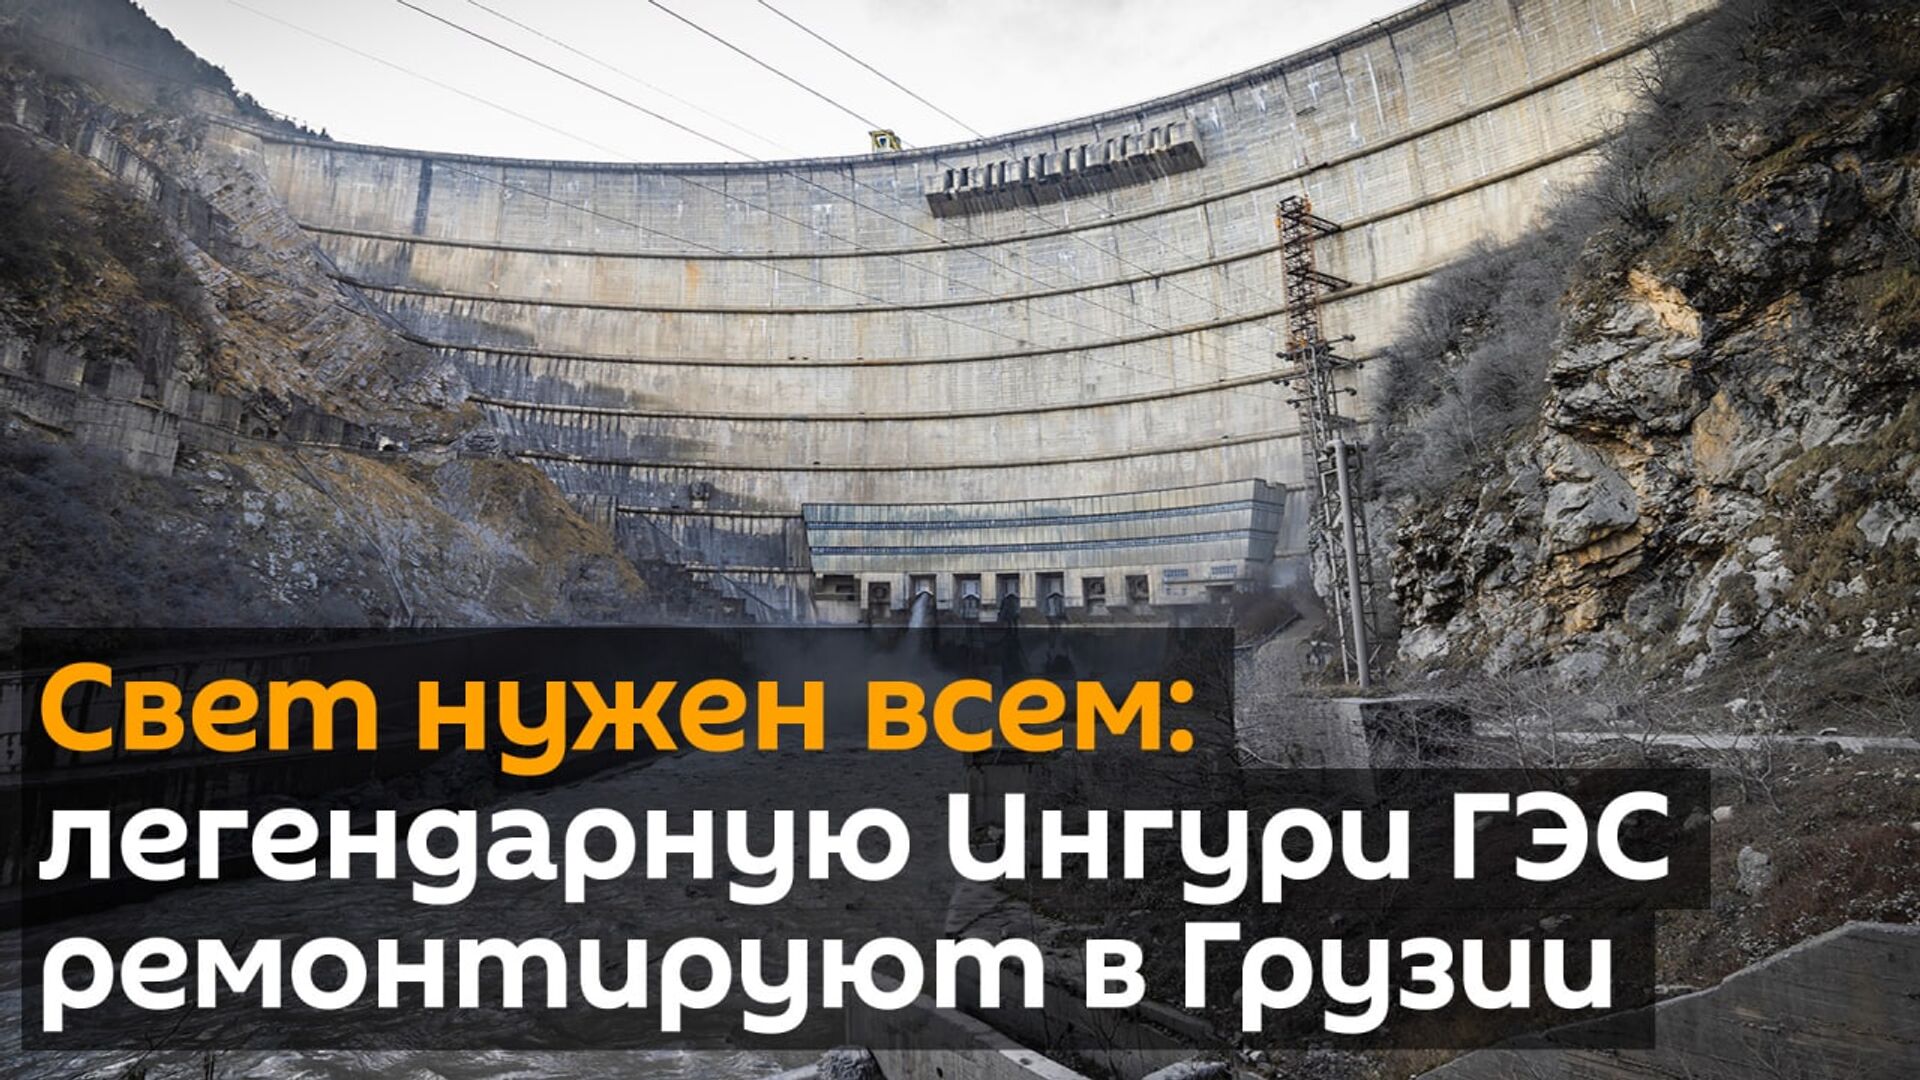 Ингури ГЭС заработала после ремонта - Sputnik Грузия, 1920, 27.04.2021